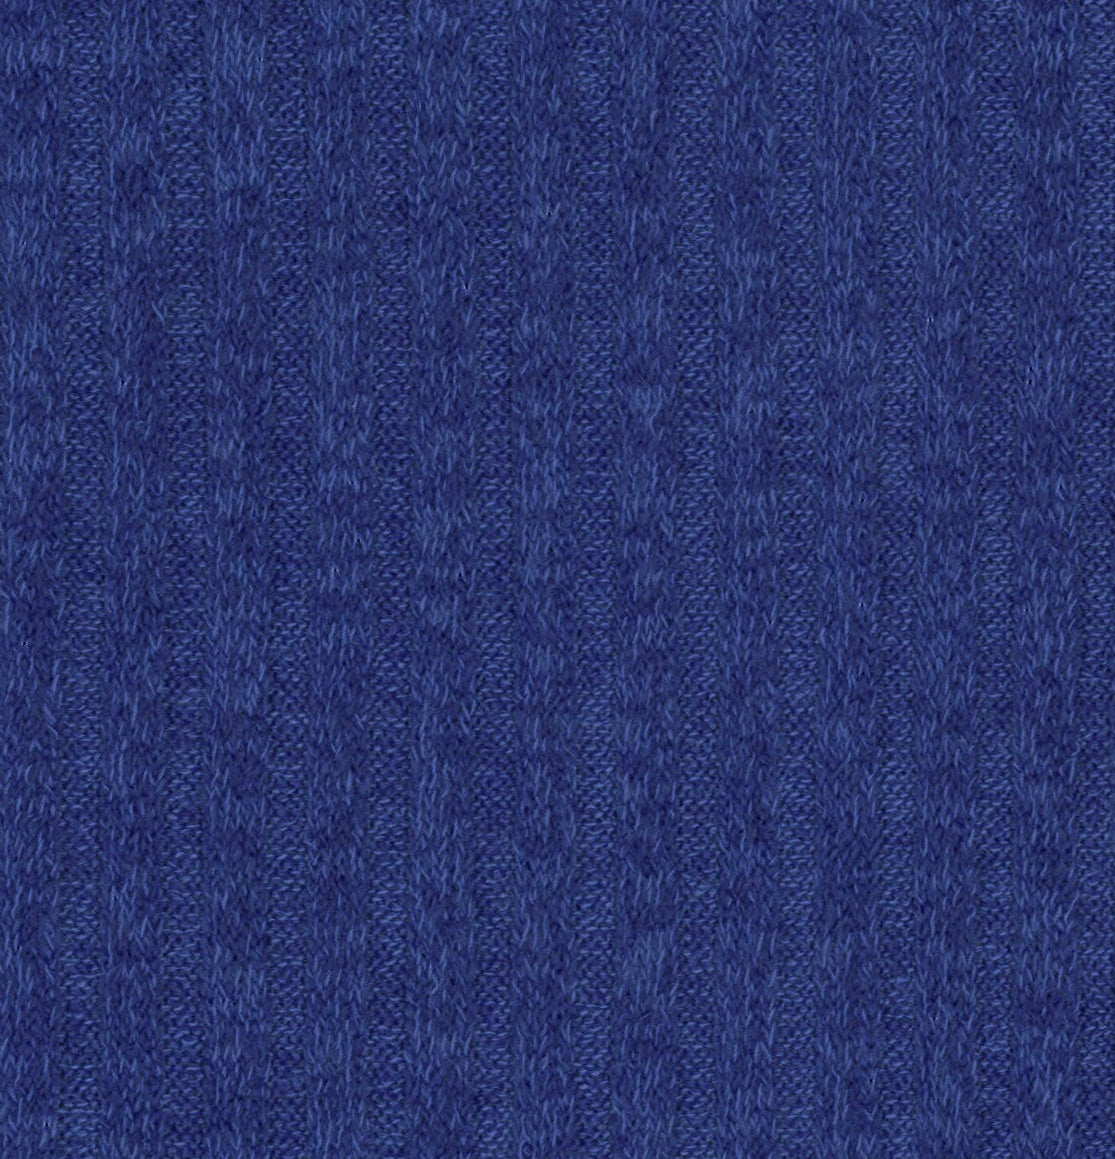 15012-11 Ashley Blue Rib Plain Dyed Blend 330g/yd 54&quot; blend blue knit plain dyed polyester rayon rib spandex Solid Color, Rib - knit fabric - woven fabric - fabric company - fabric wholesale - fabric b2b - fabric factory - high quality fabric - hong kong fabric - fabric hk - acetate fabric - cotton fabric - linen fabric - metallic fabric - nylon fabric - polyester fabric - spandex fabric - chun wing hing - cwh hk - fabric worldwide ship - 針織布 - 梳織布 - 布料公司- 布料批發 - 香港布料 - 秦榮興